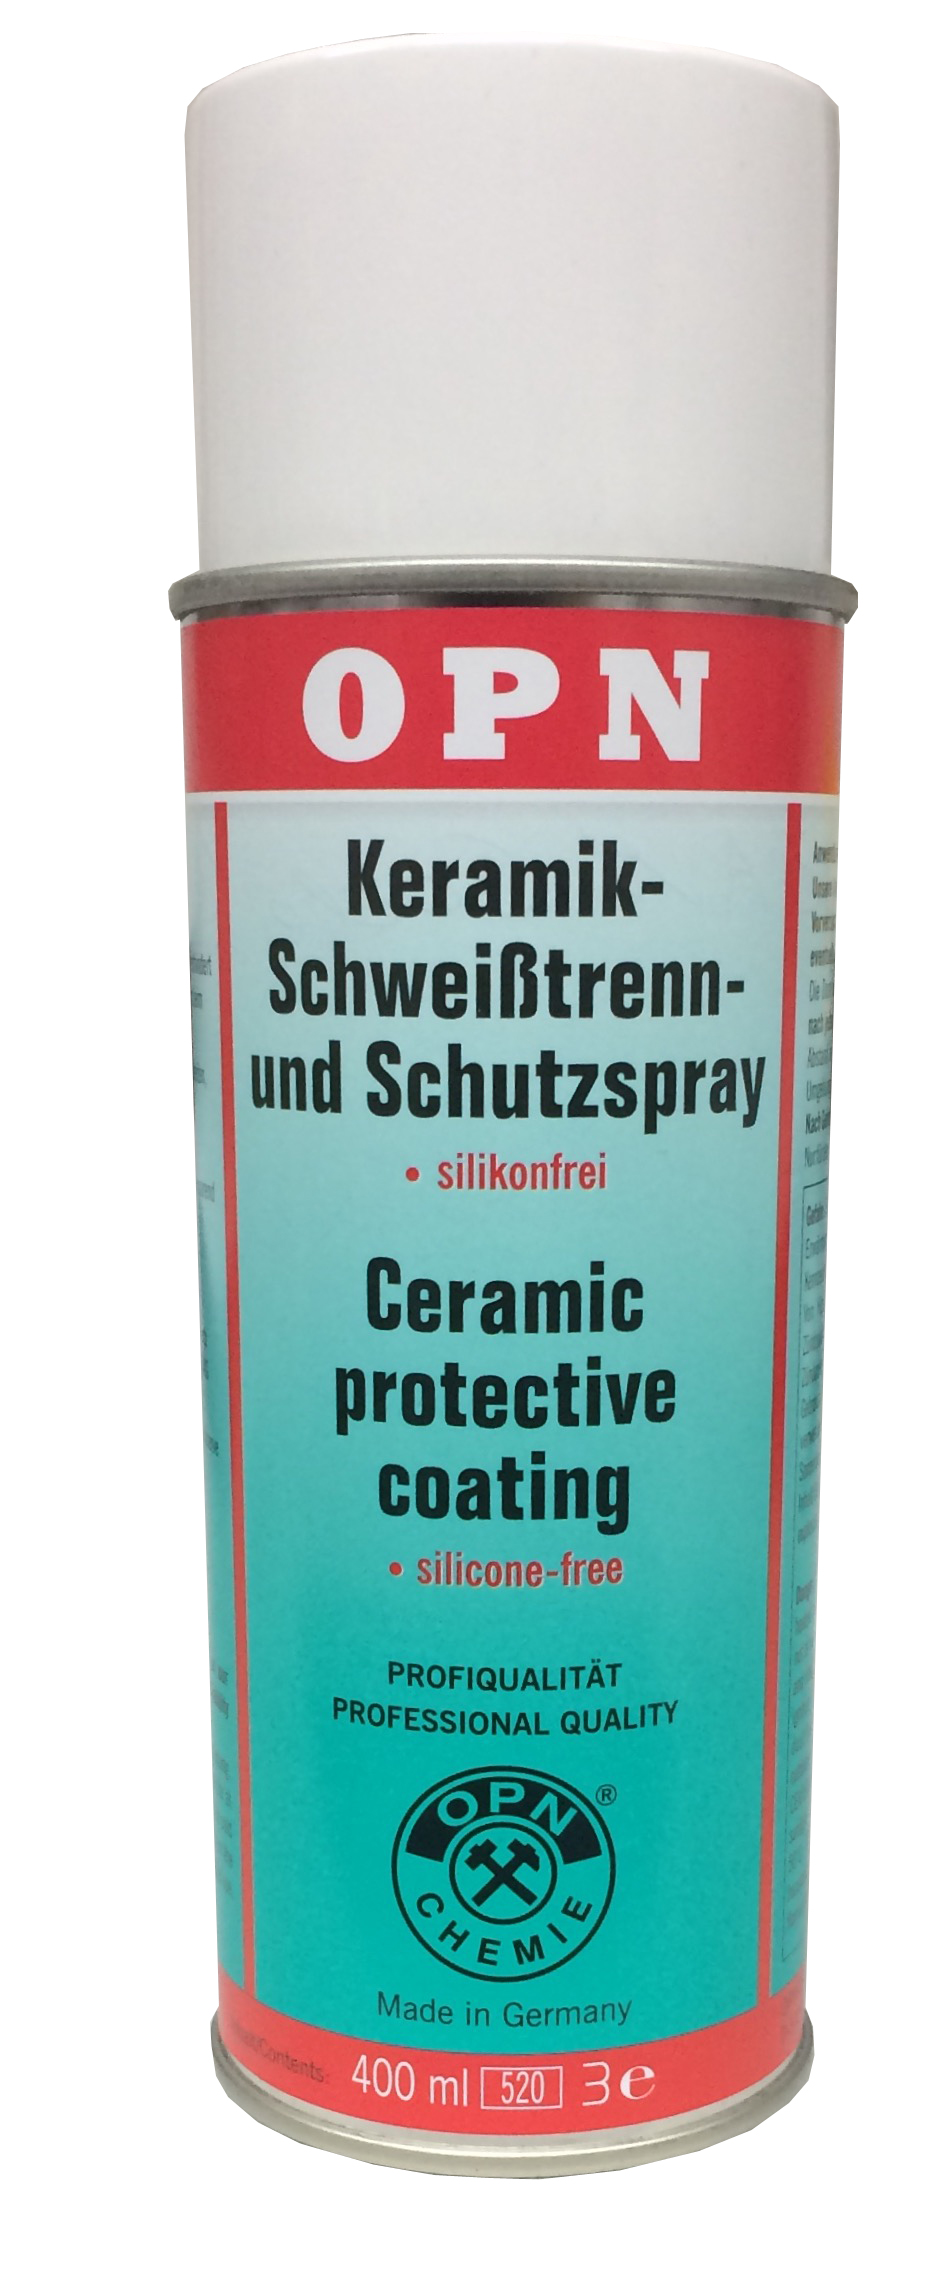 Keramik-Schweißtrenn- und Schutzspray